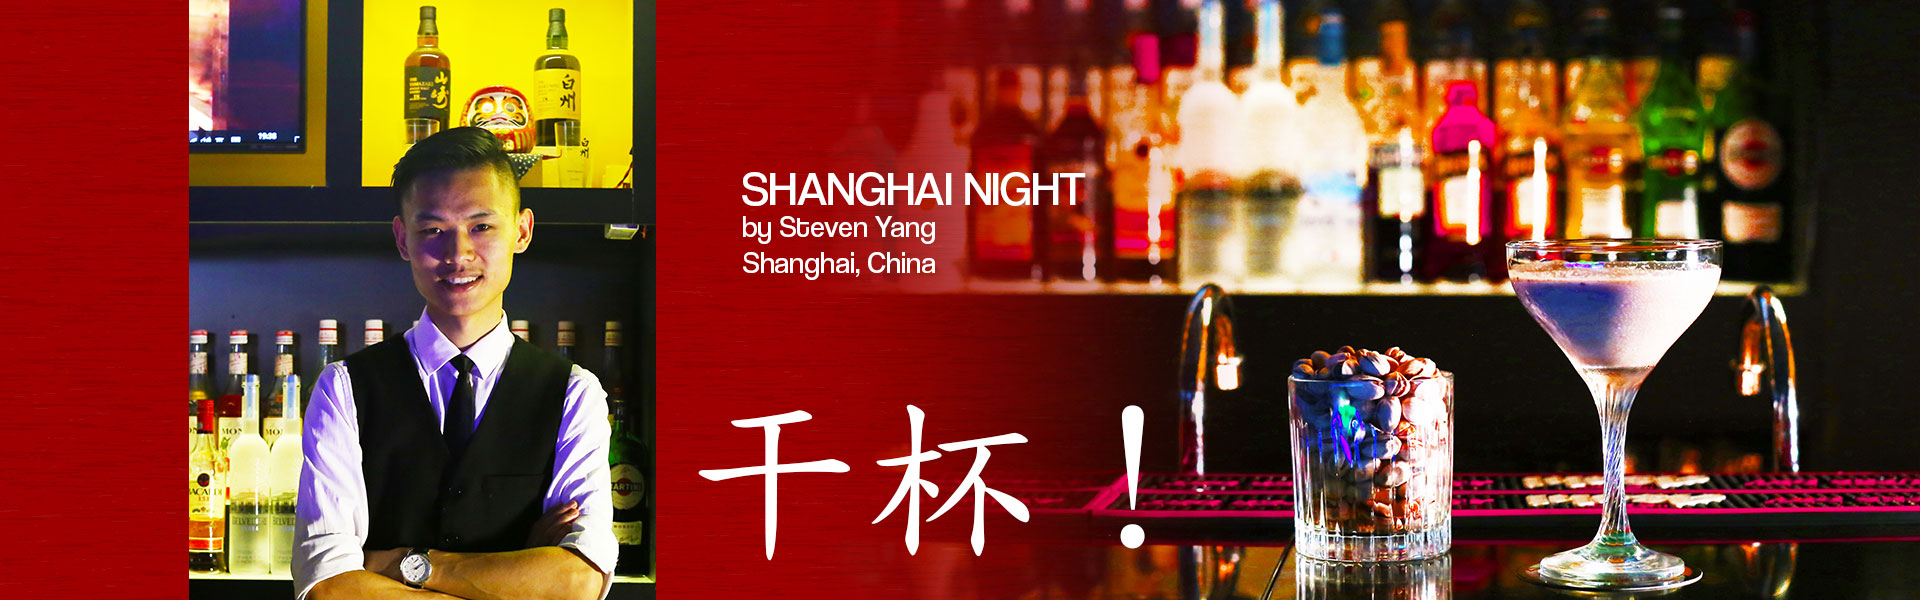 Shanghai Night - Cheers